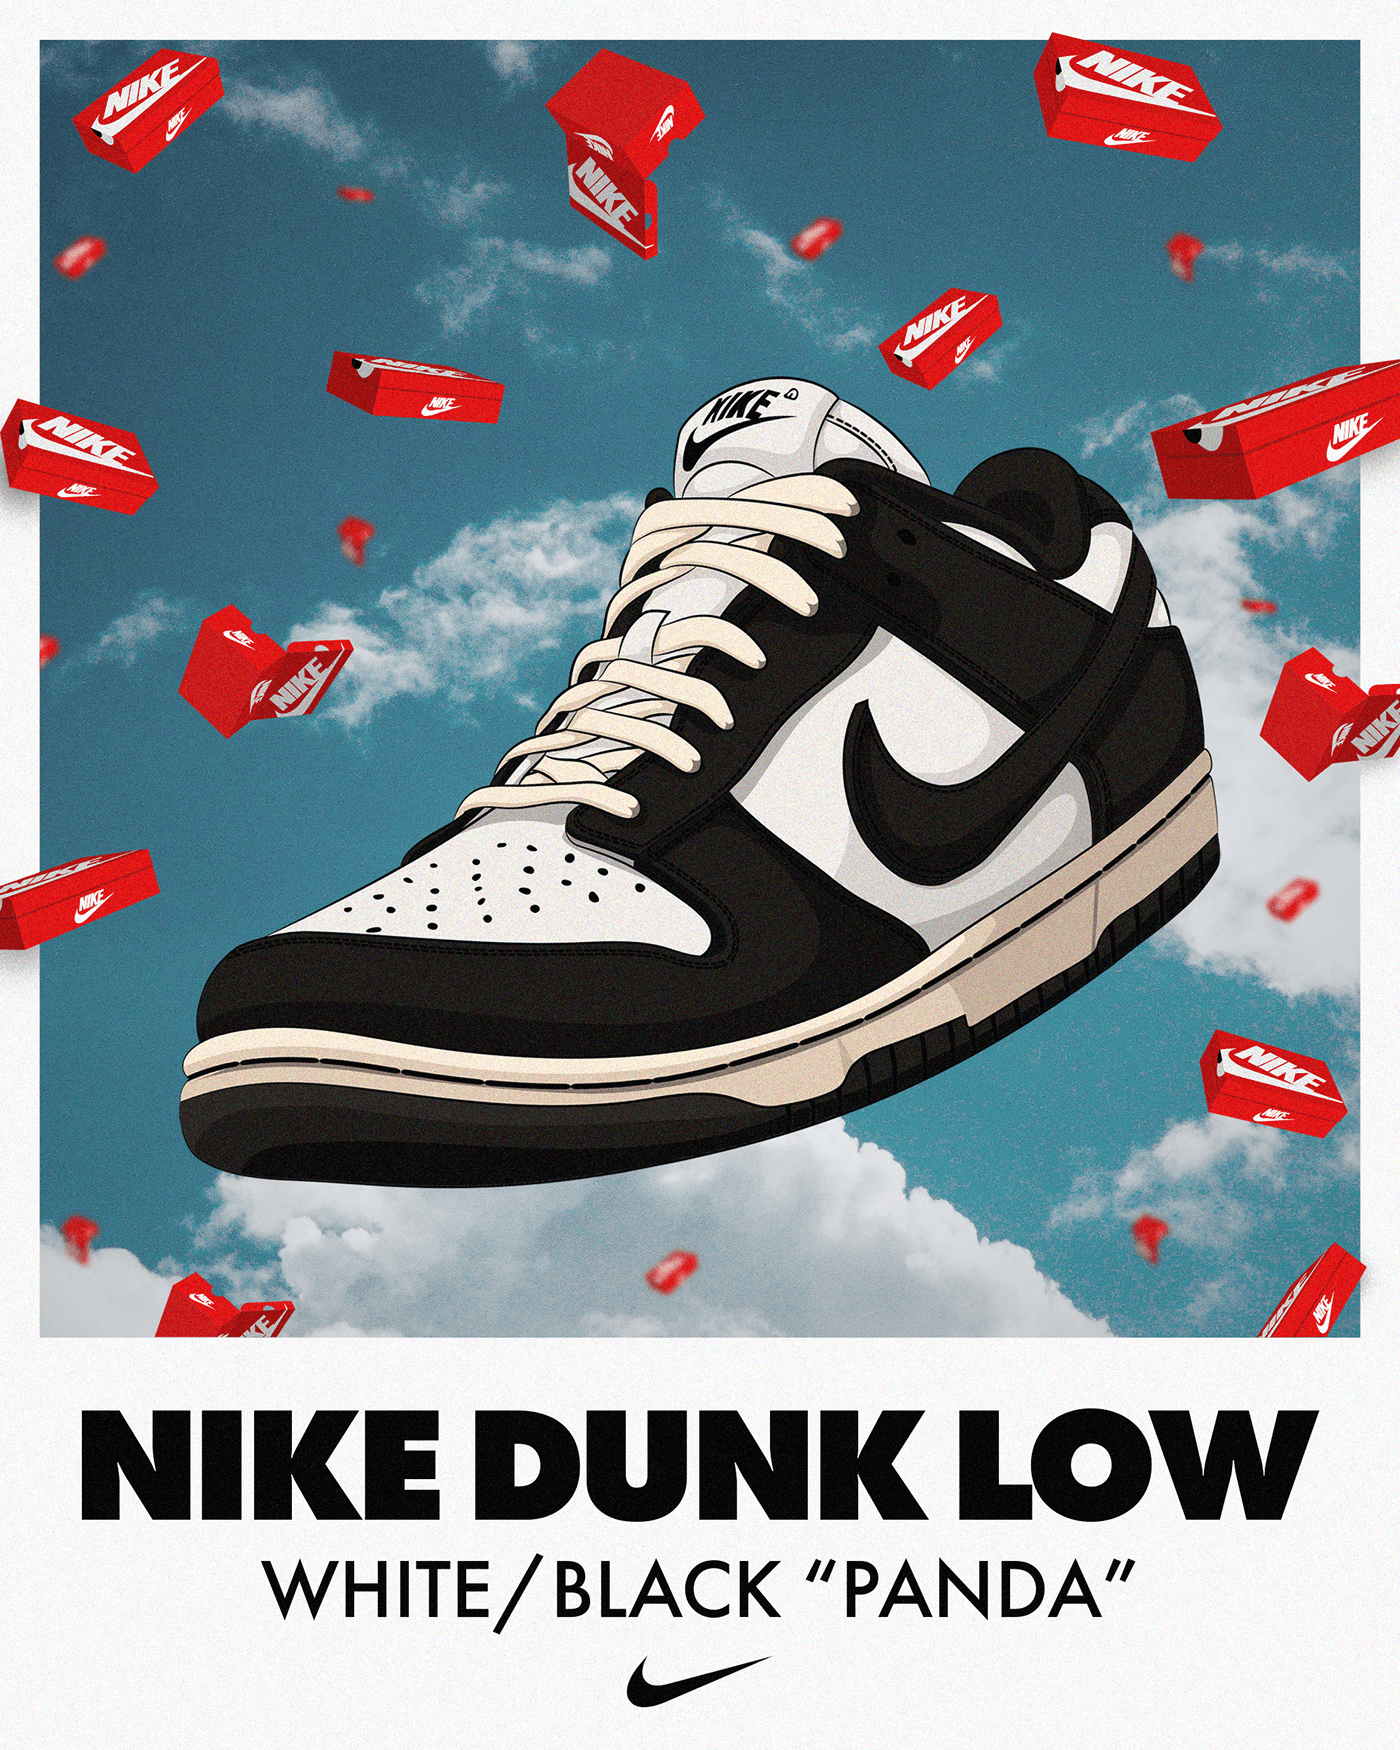 sneakers sneaker Poster Design Nike nike poster sneaker poster shoe design kicks DUNK poster art